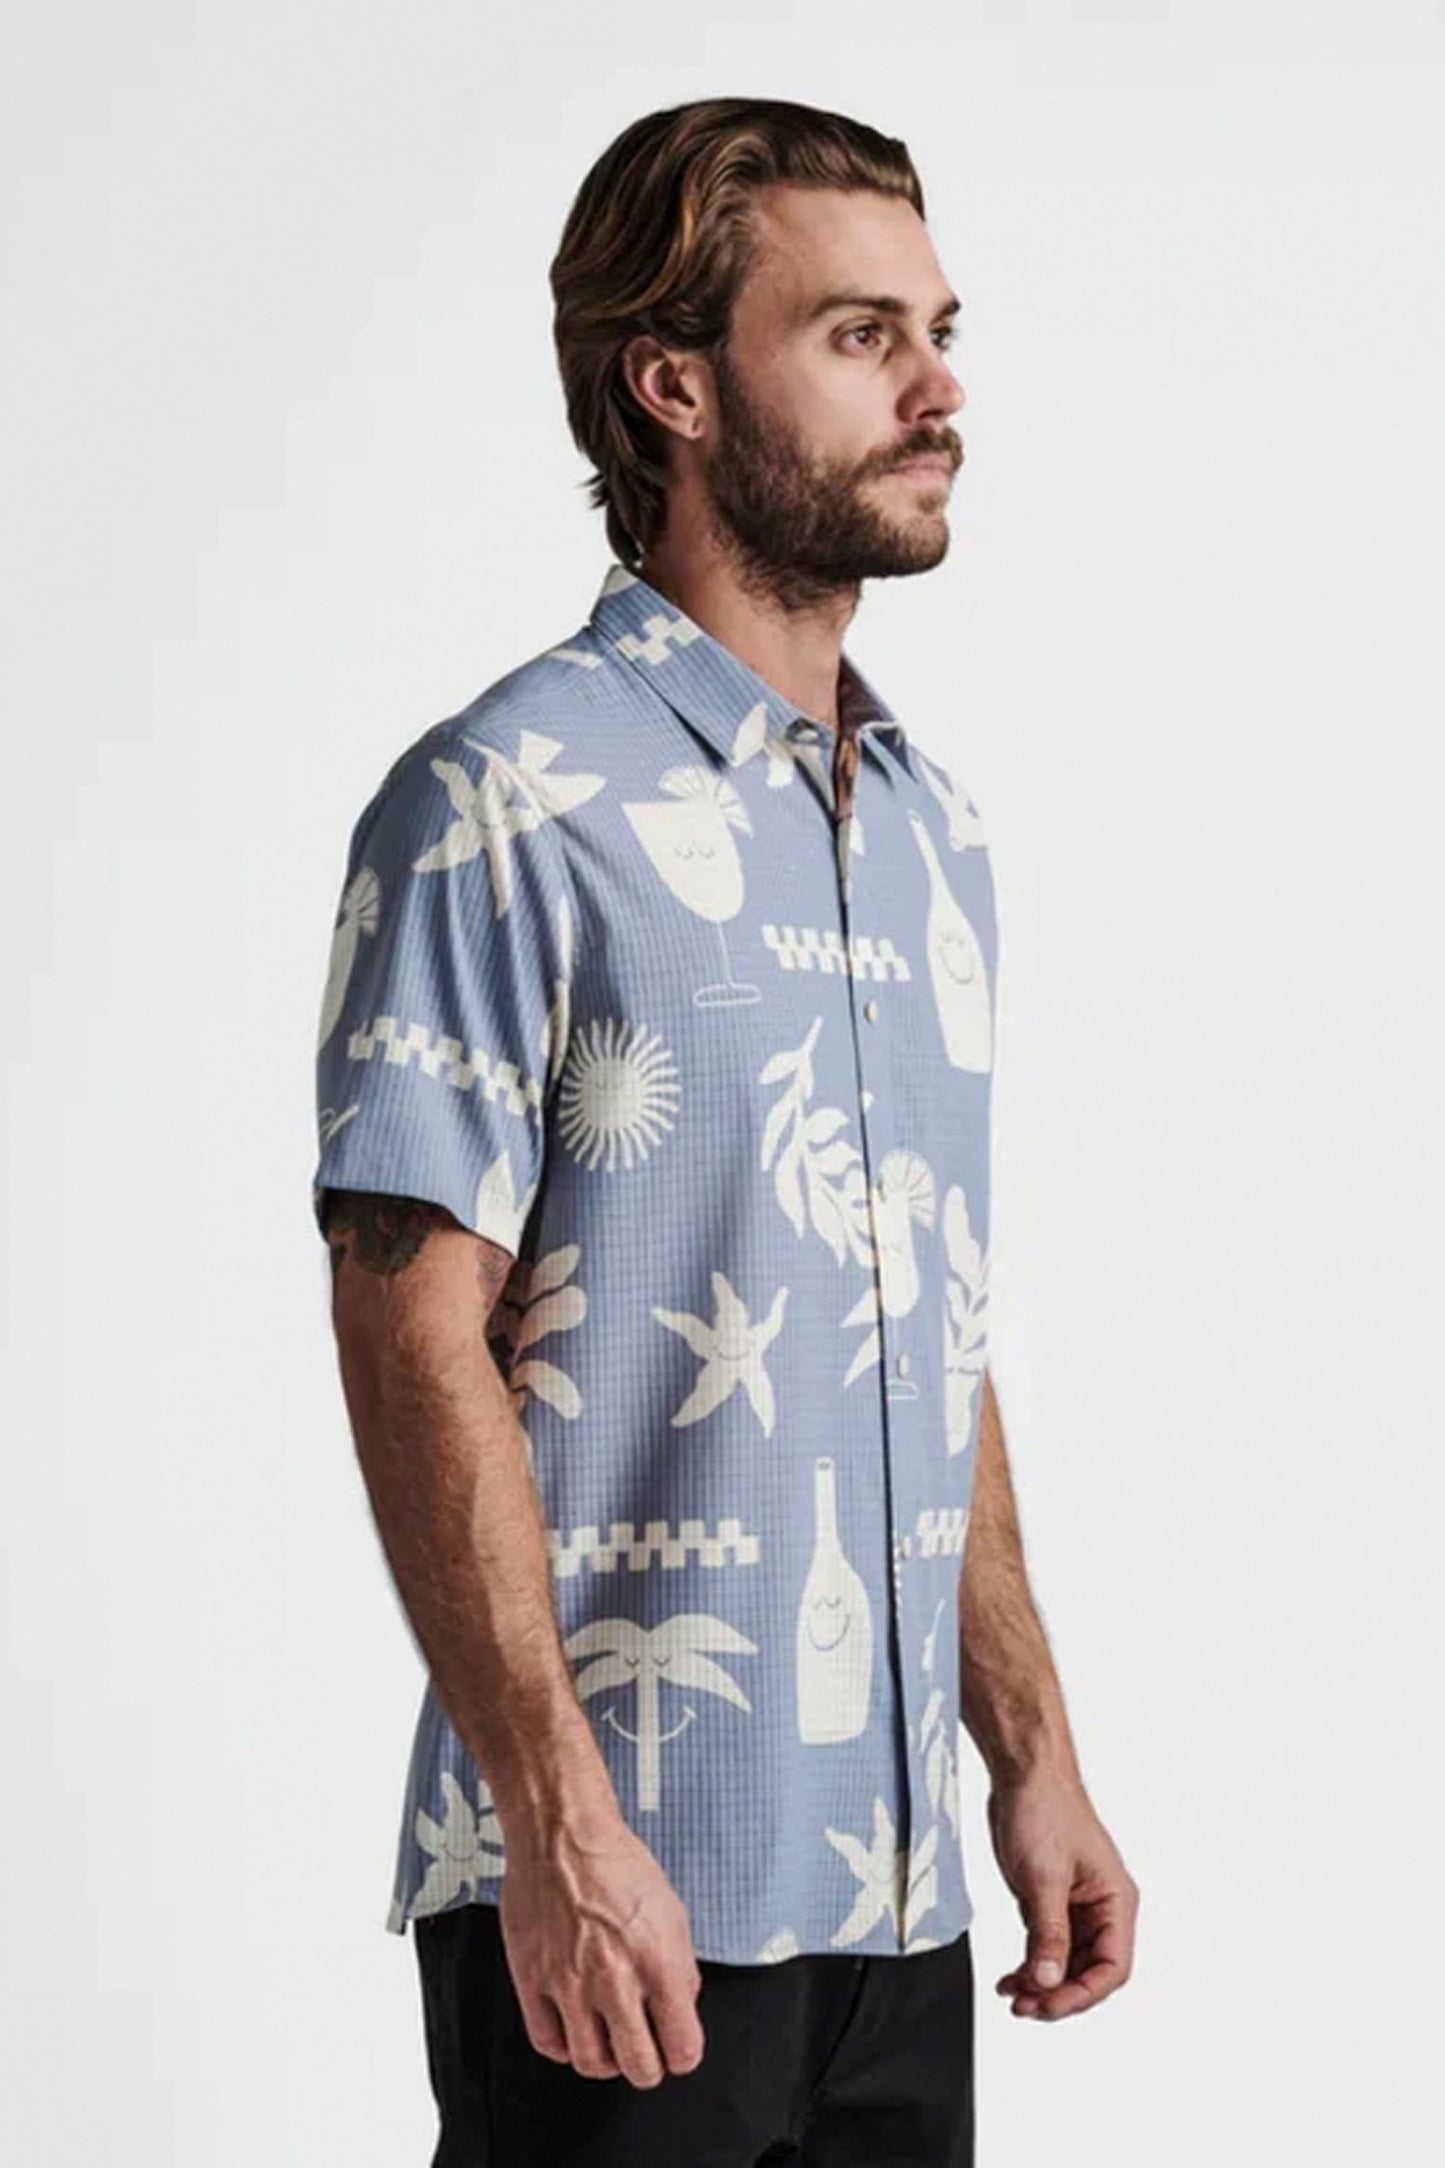 
                  
                    Pukas-Surf-Shop-Mens-Shirt-Bless-Up-Shirt-Roark
                  
                